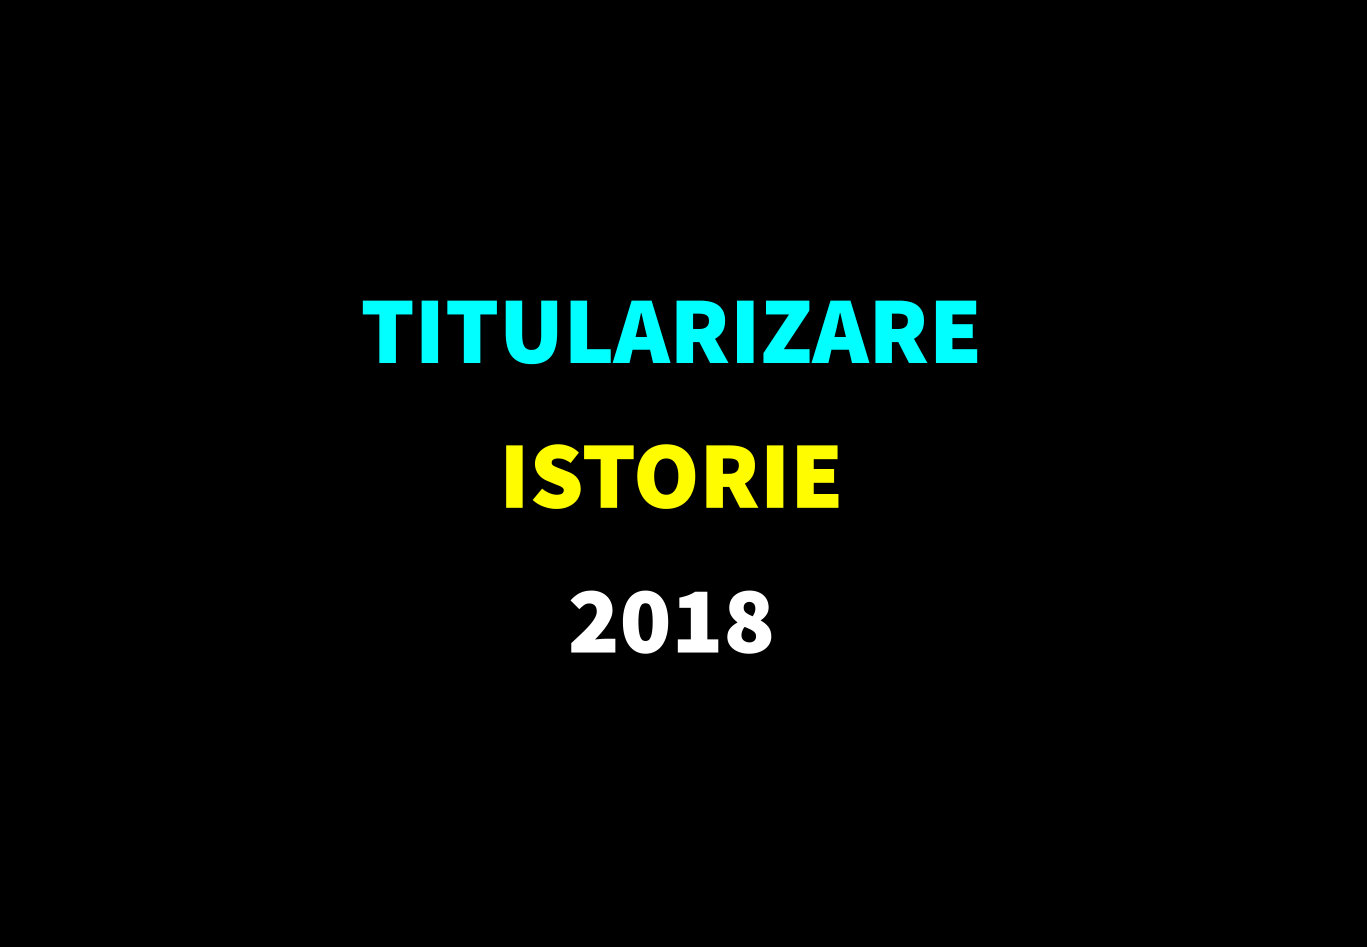 Titularizare istorie 2018